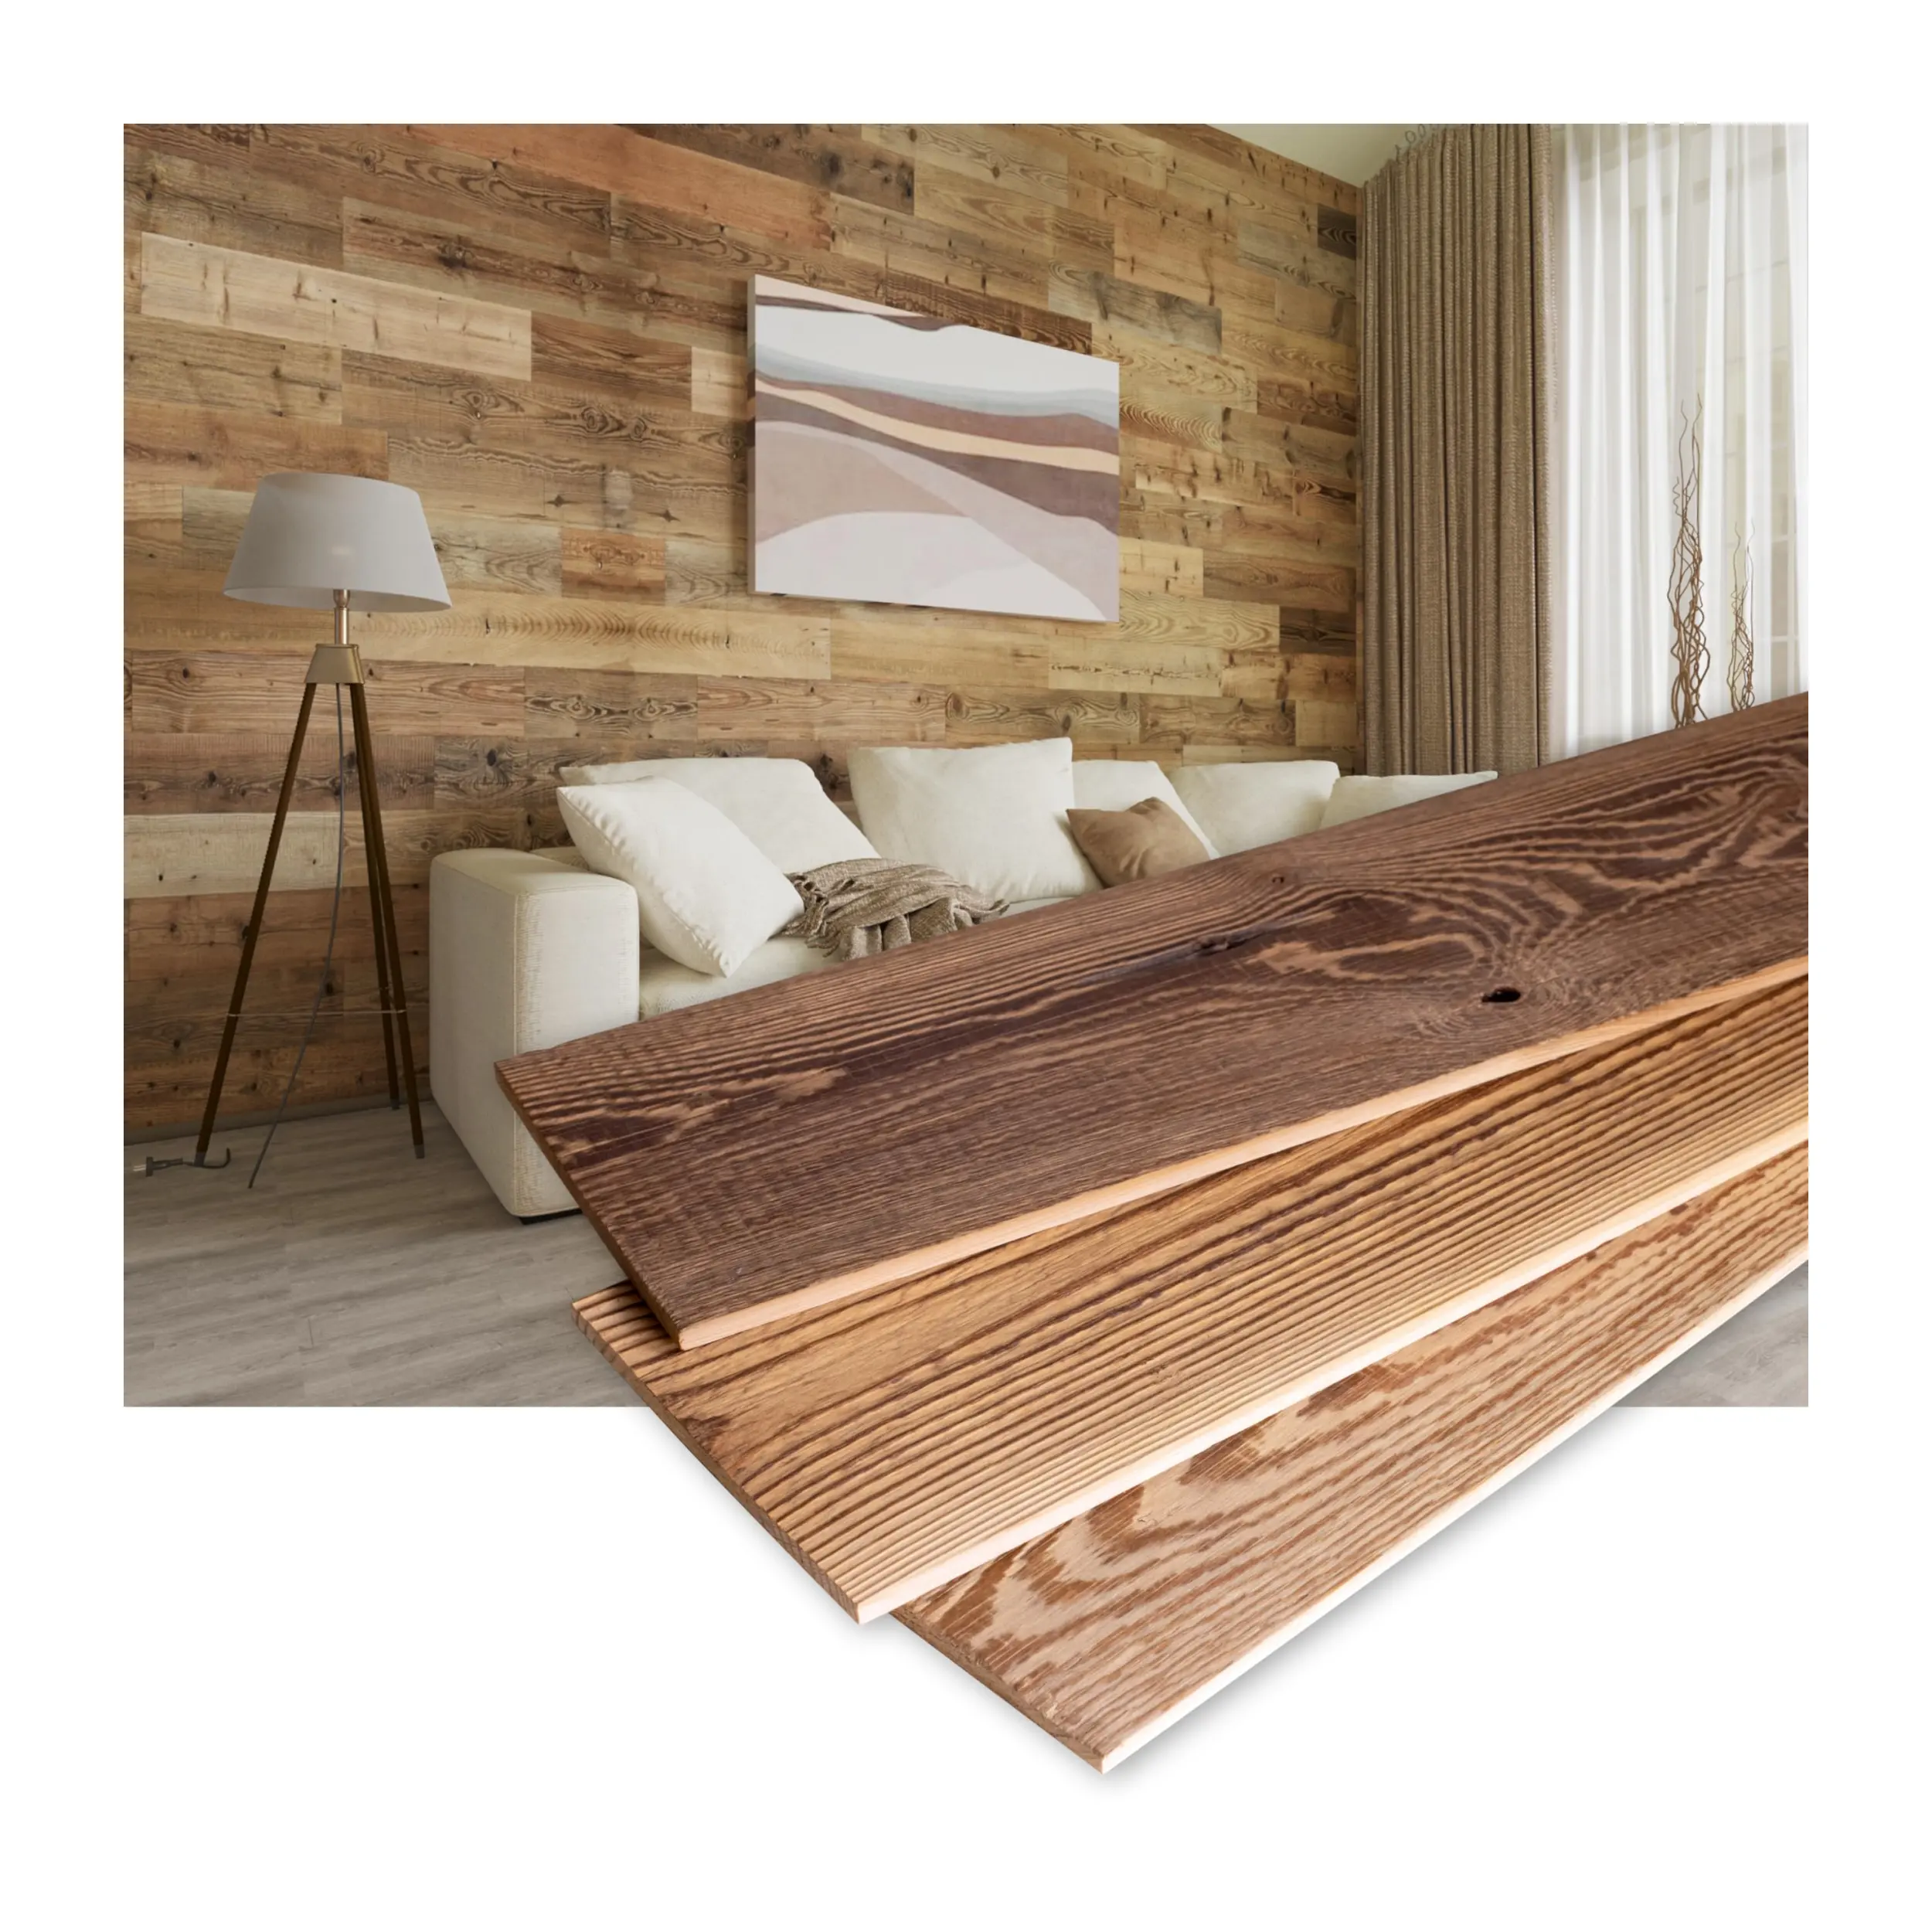 Vecchio stile fienile casa fattoria pannelli di legno pareti in legno rustico legno pannelli di parete fienile pannelli di legno